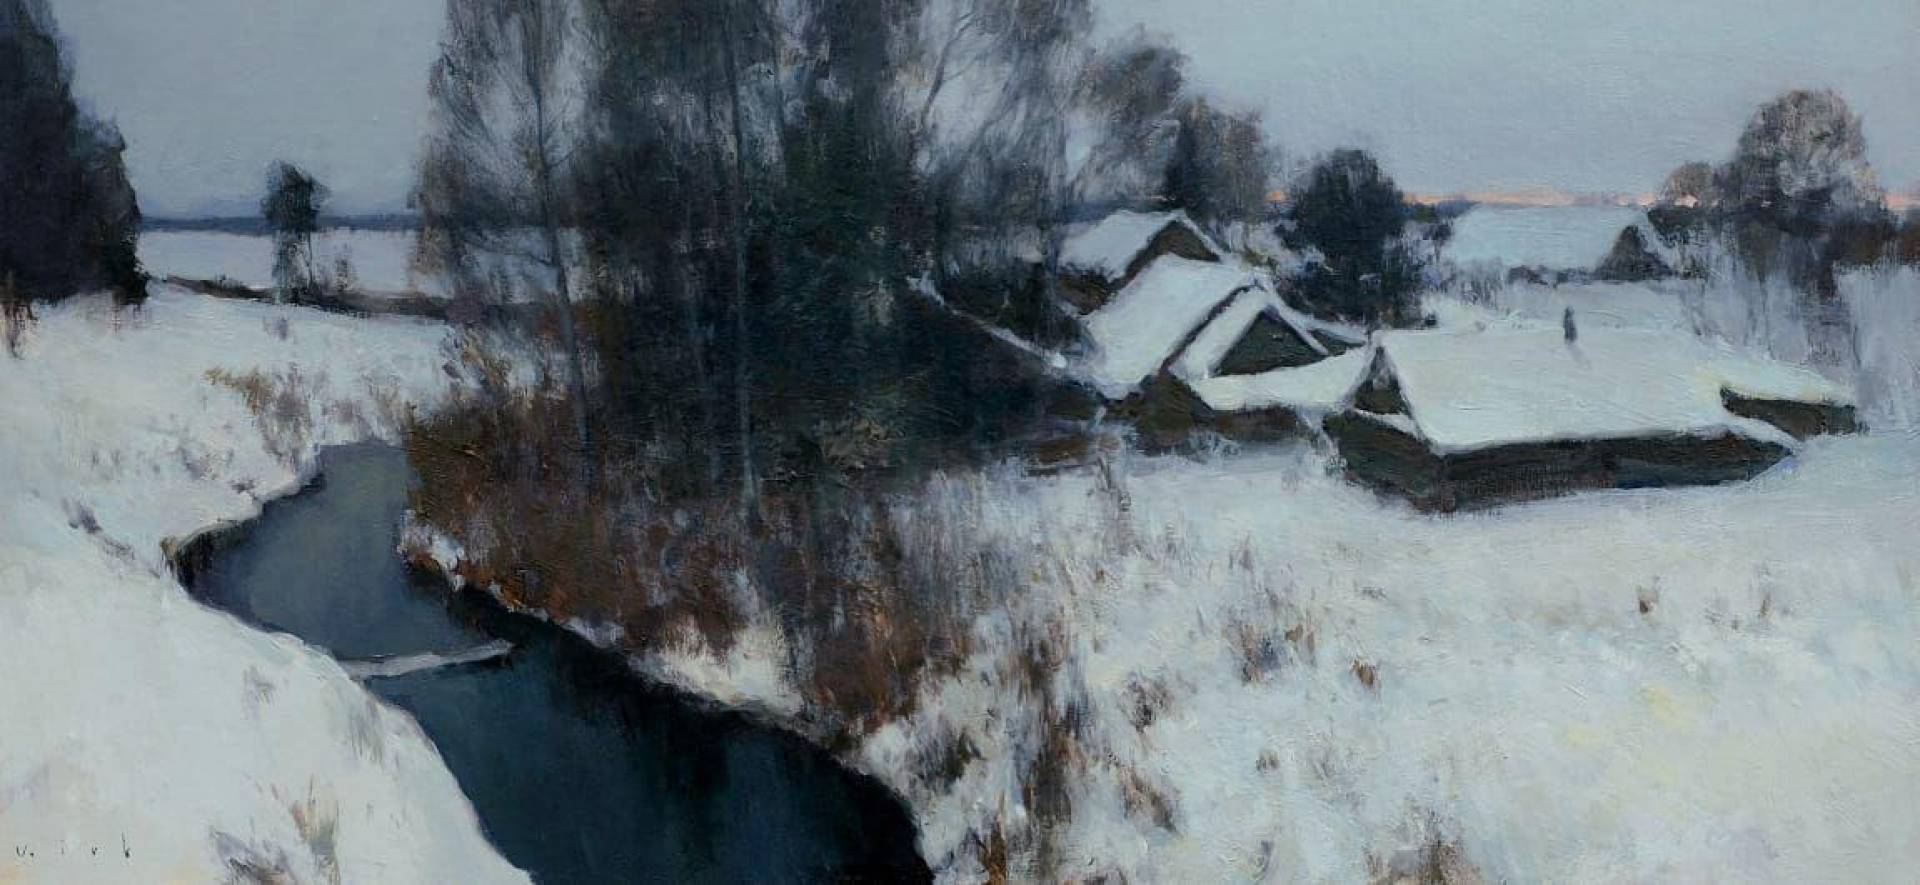 Winter village. Sketch, Vladimir Kirillov, Buy the painting Oil